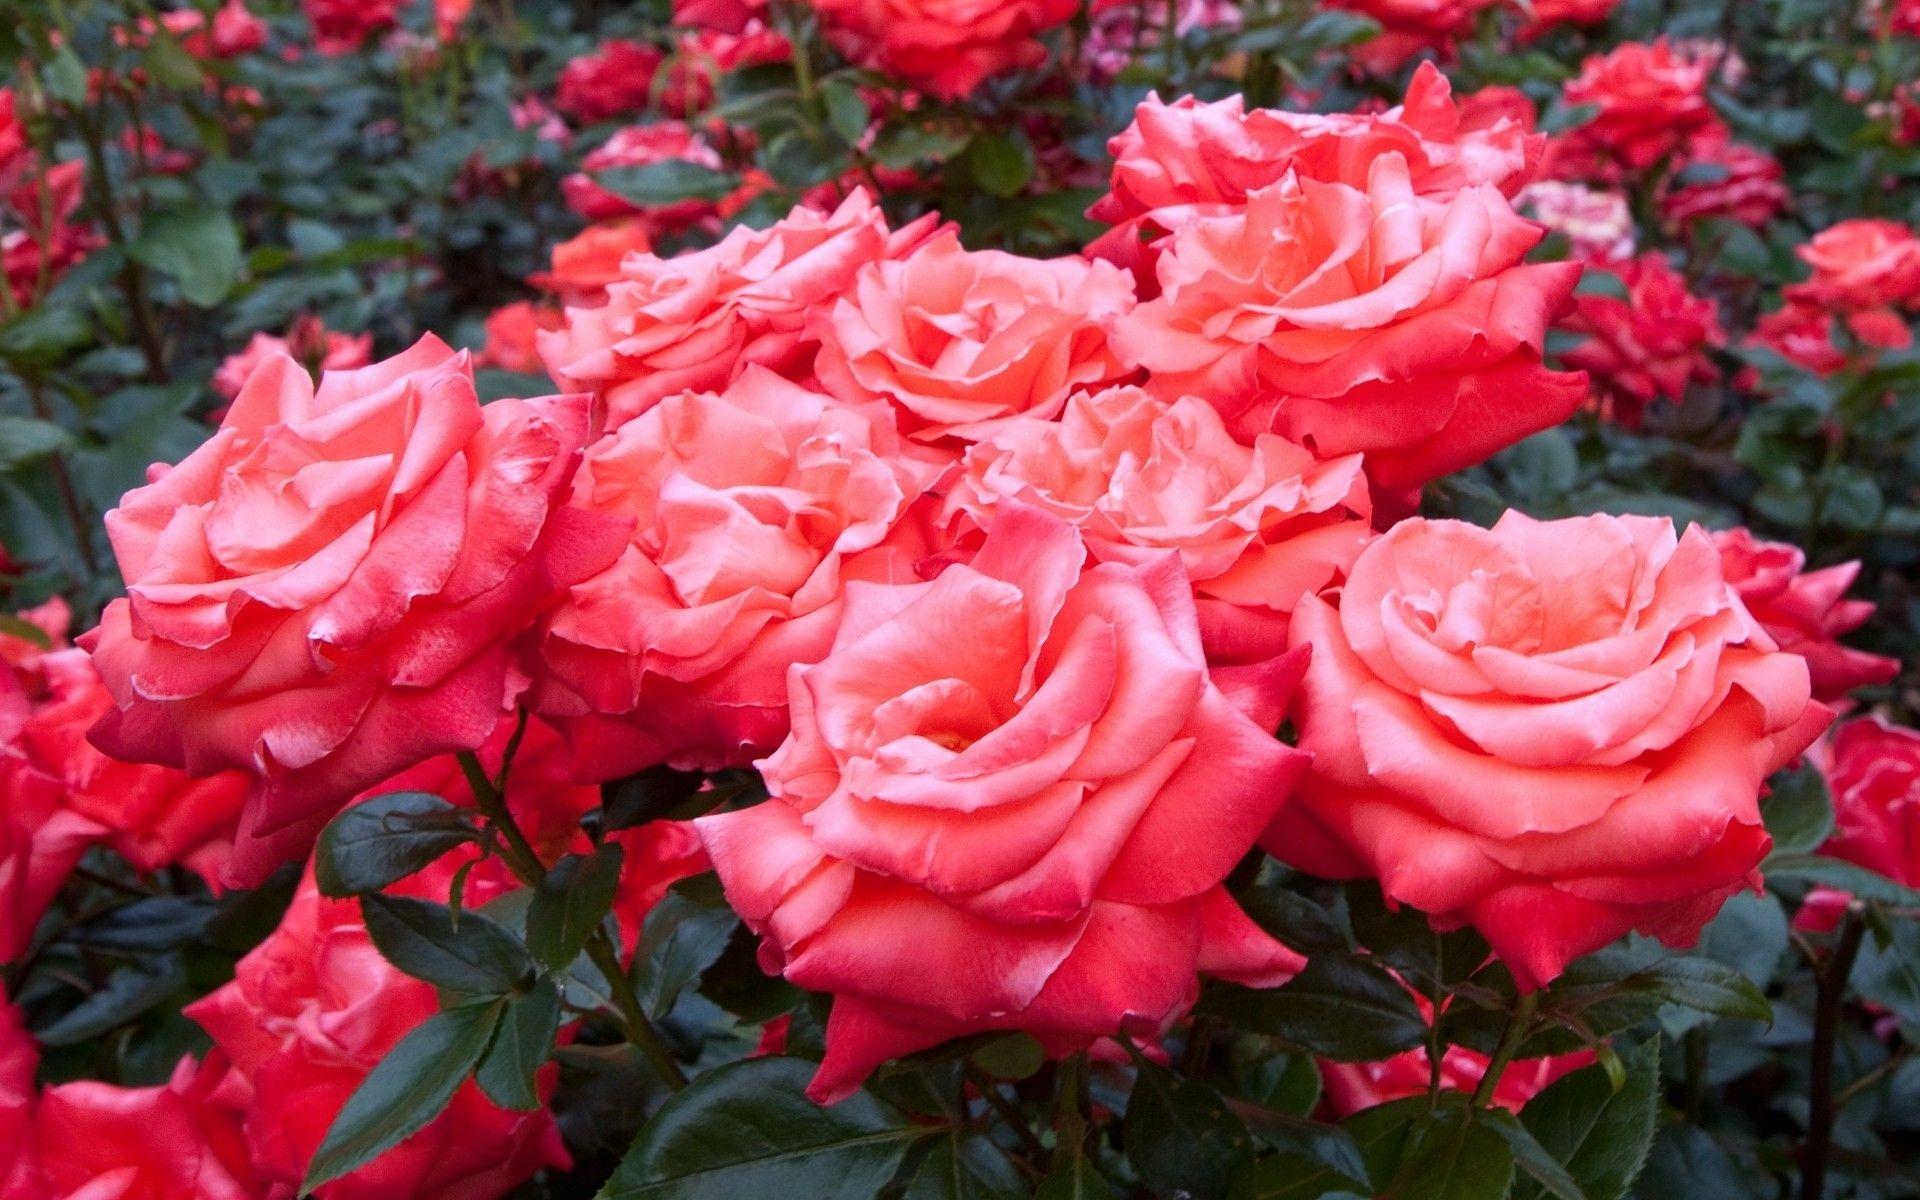 Hình nền hoa hồng tuyệt vời 1920x1200 Tumblr 7257 1920 x 1200